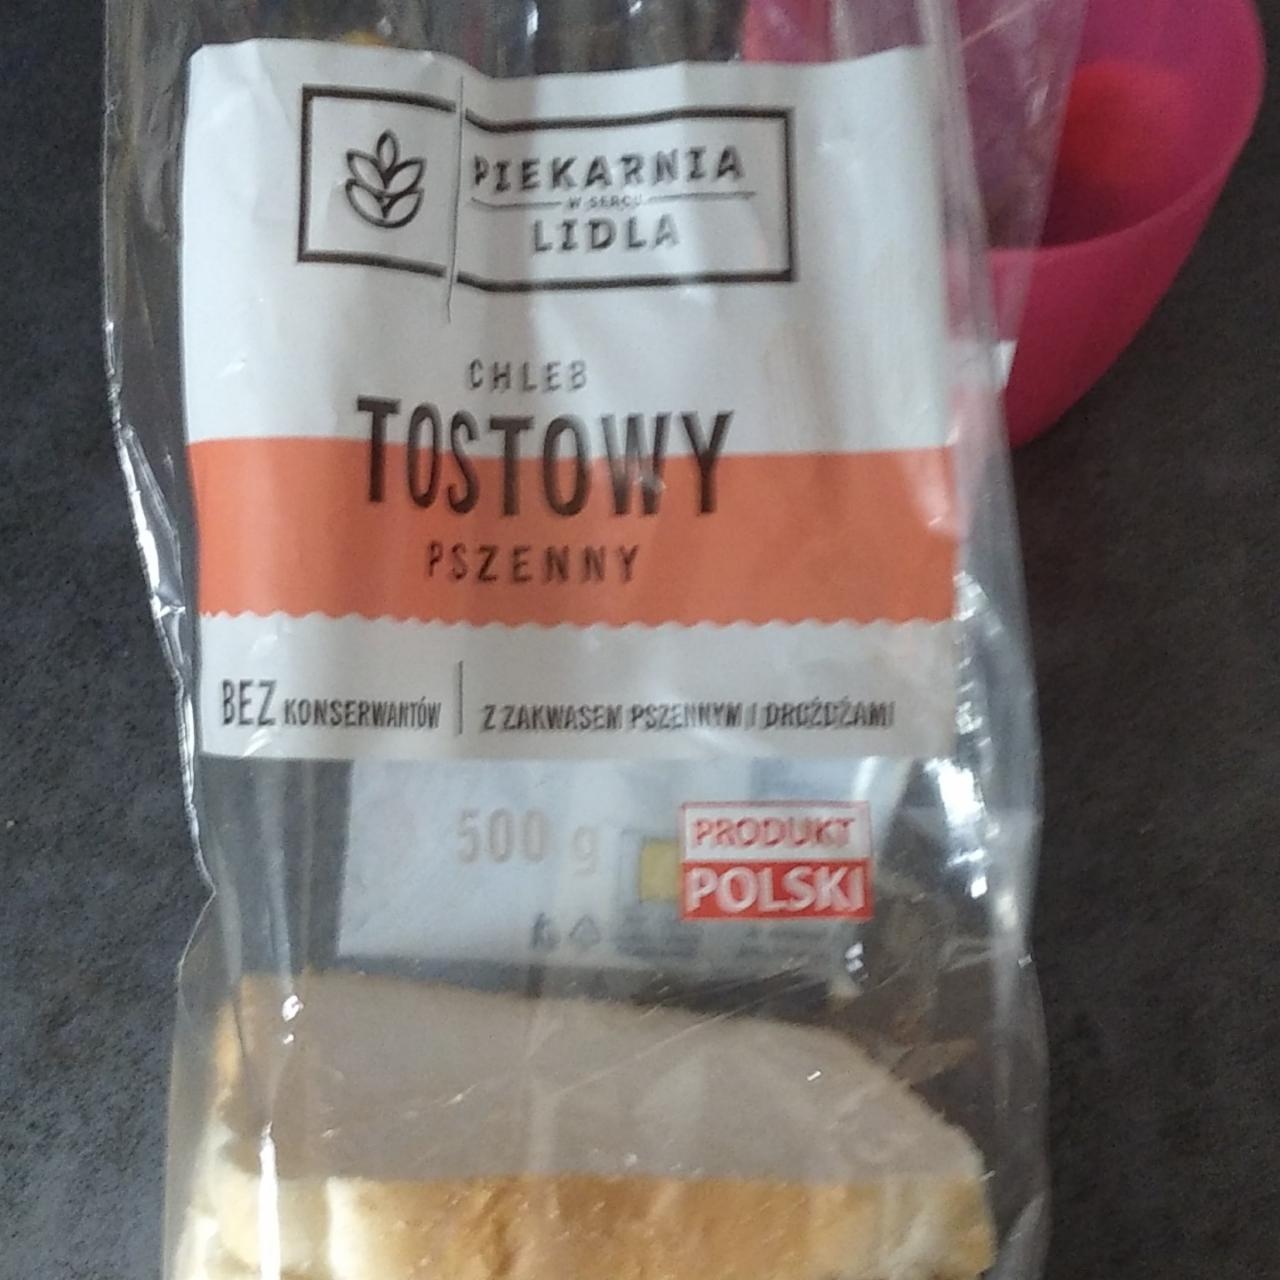 Zdjęcia - Chleb tostowy pszenny Piekarnia Lidla